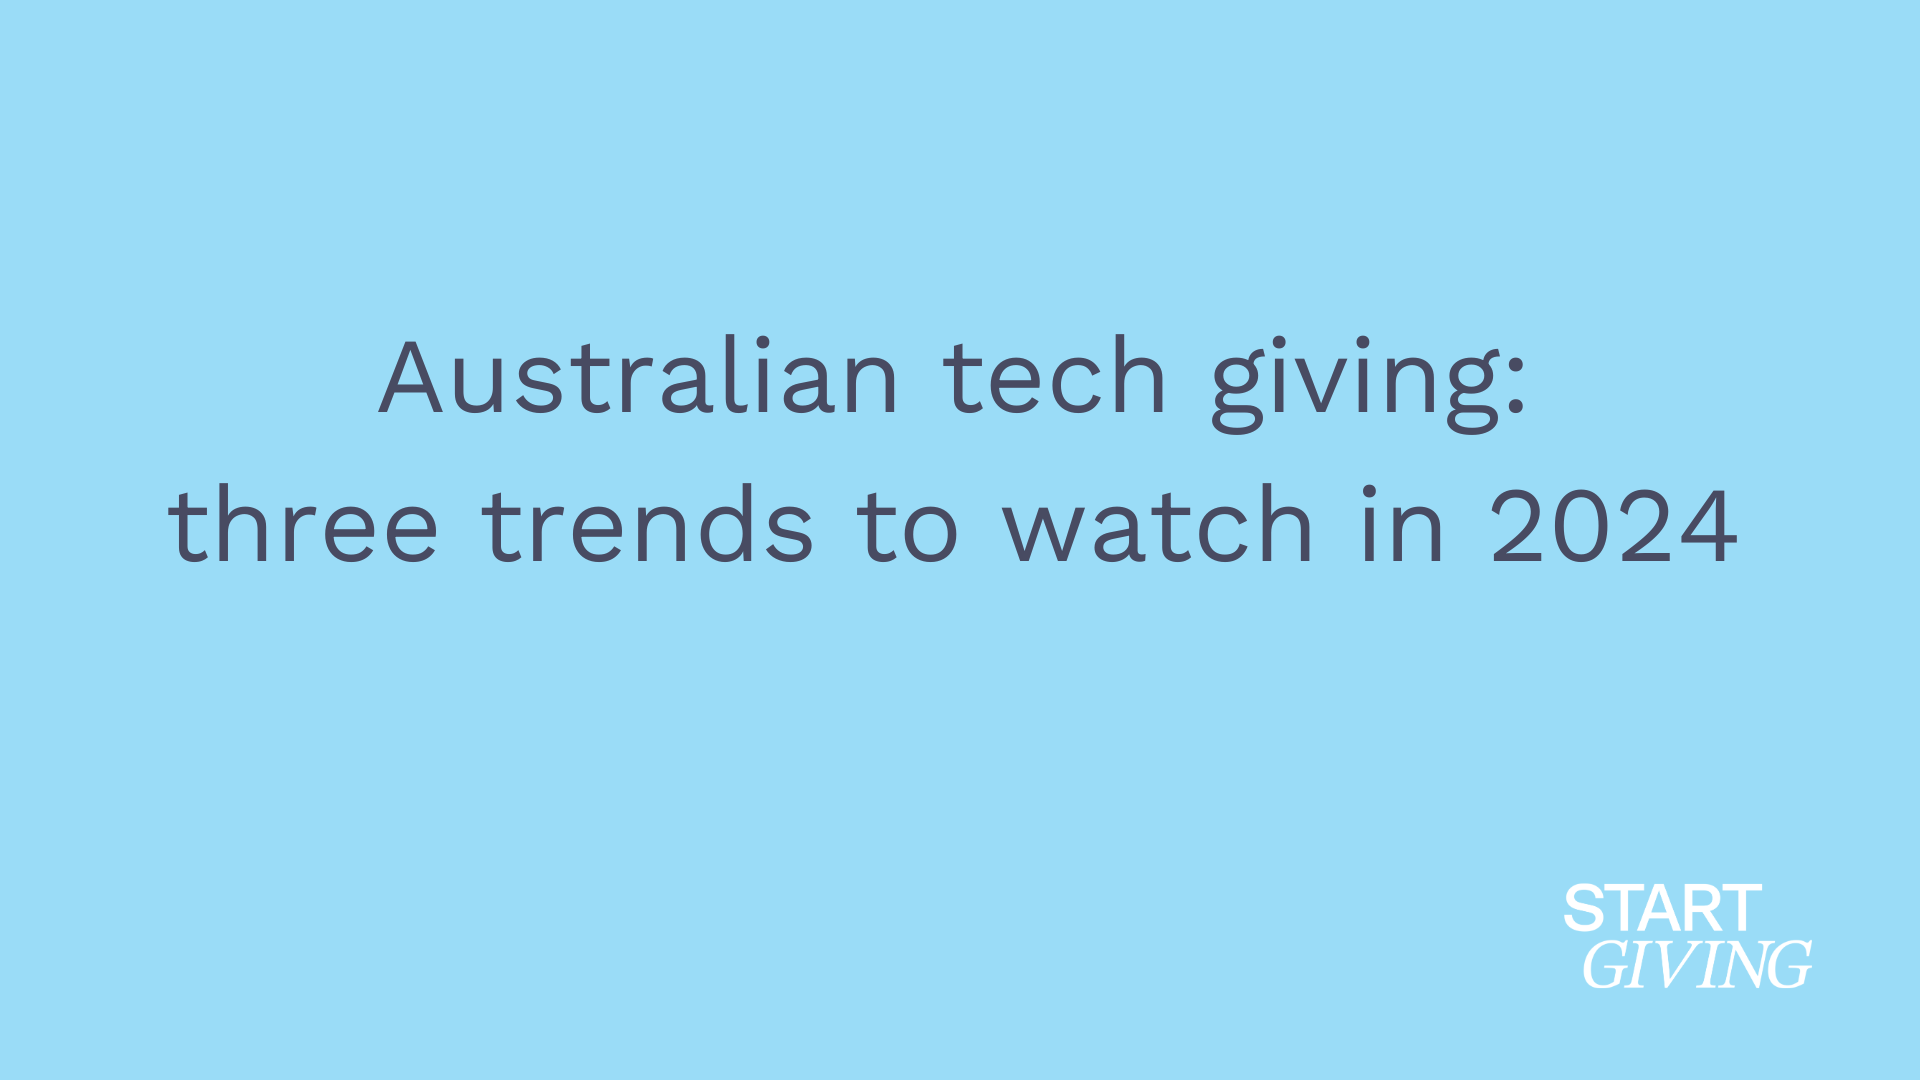 Australian tech giving trends in 2024